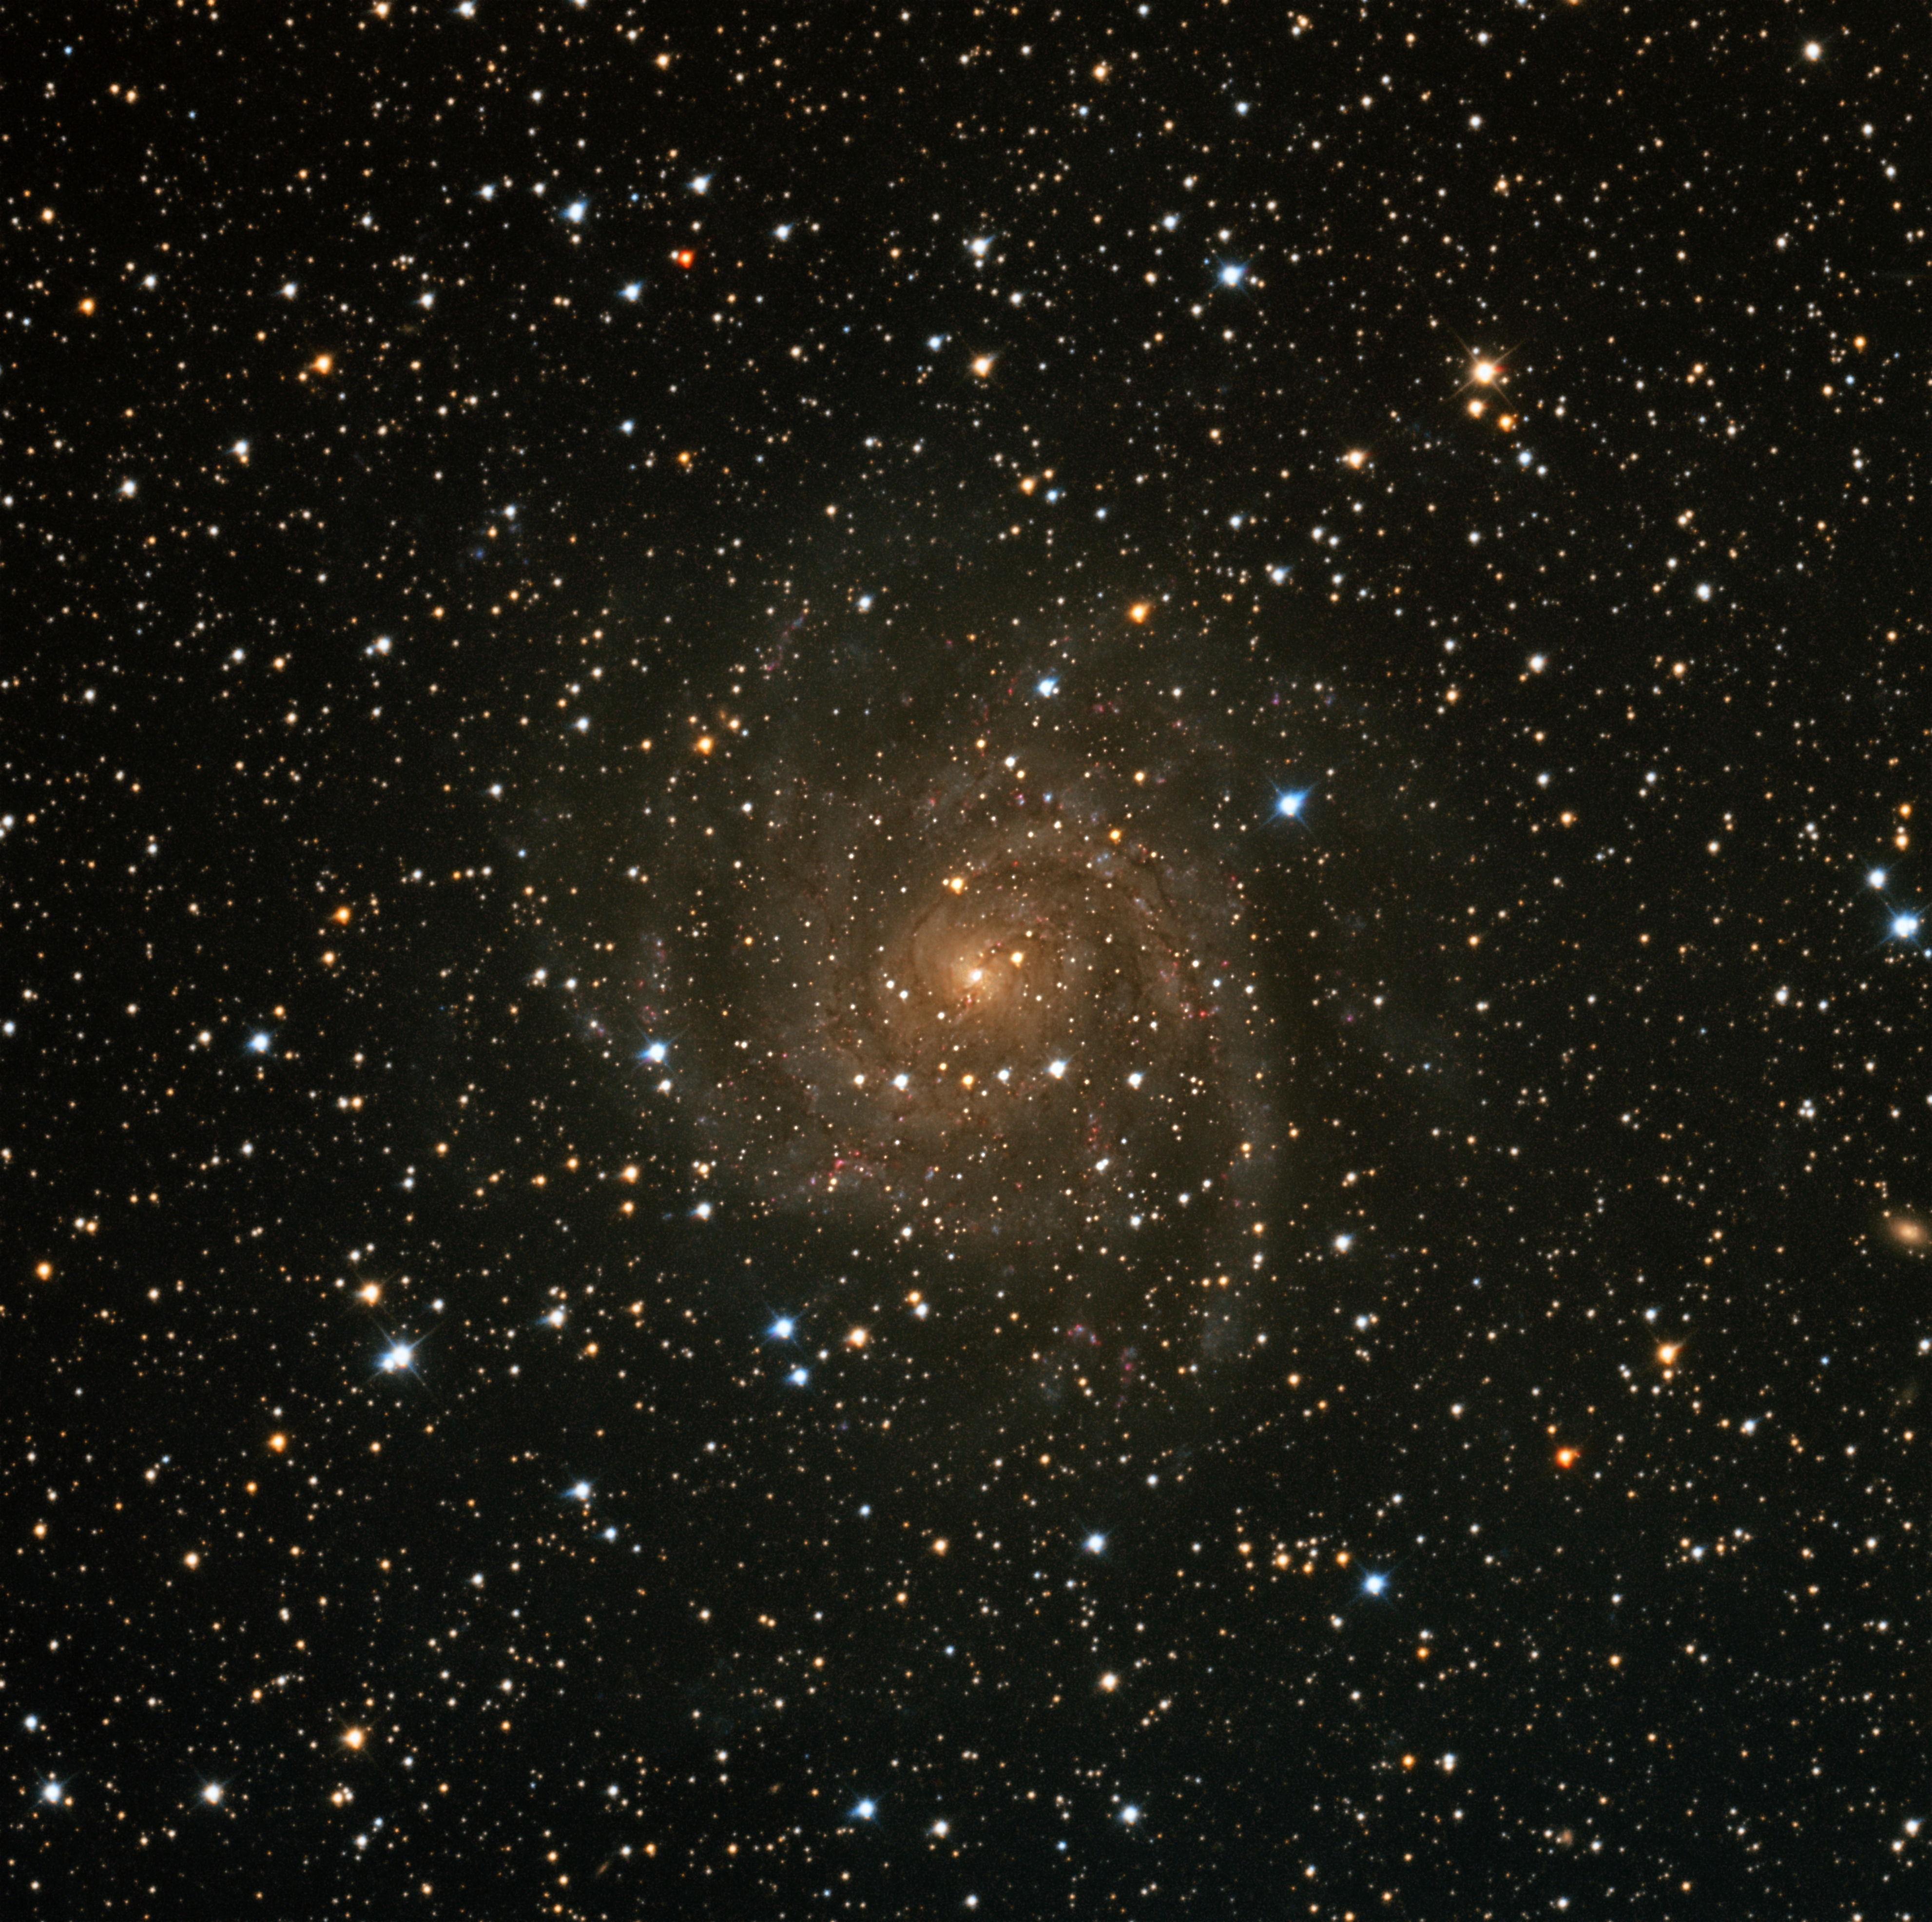 IC 342 "The Hidden Galaxies"